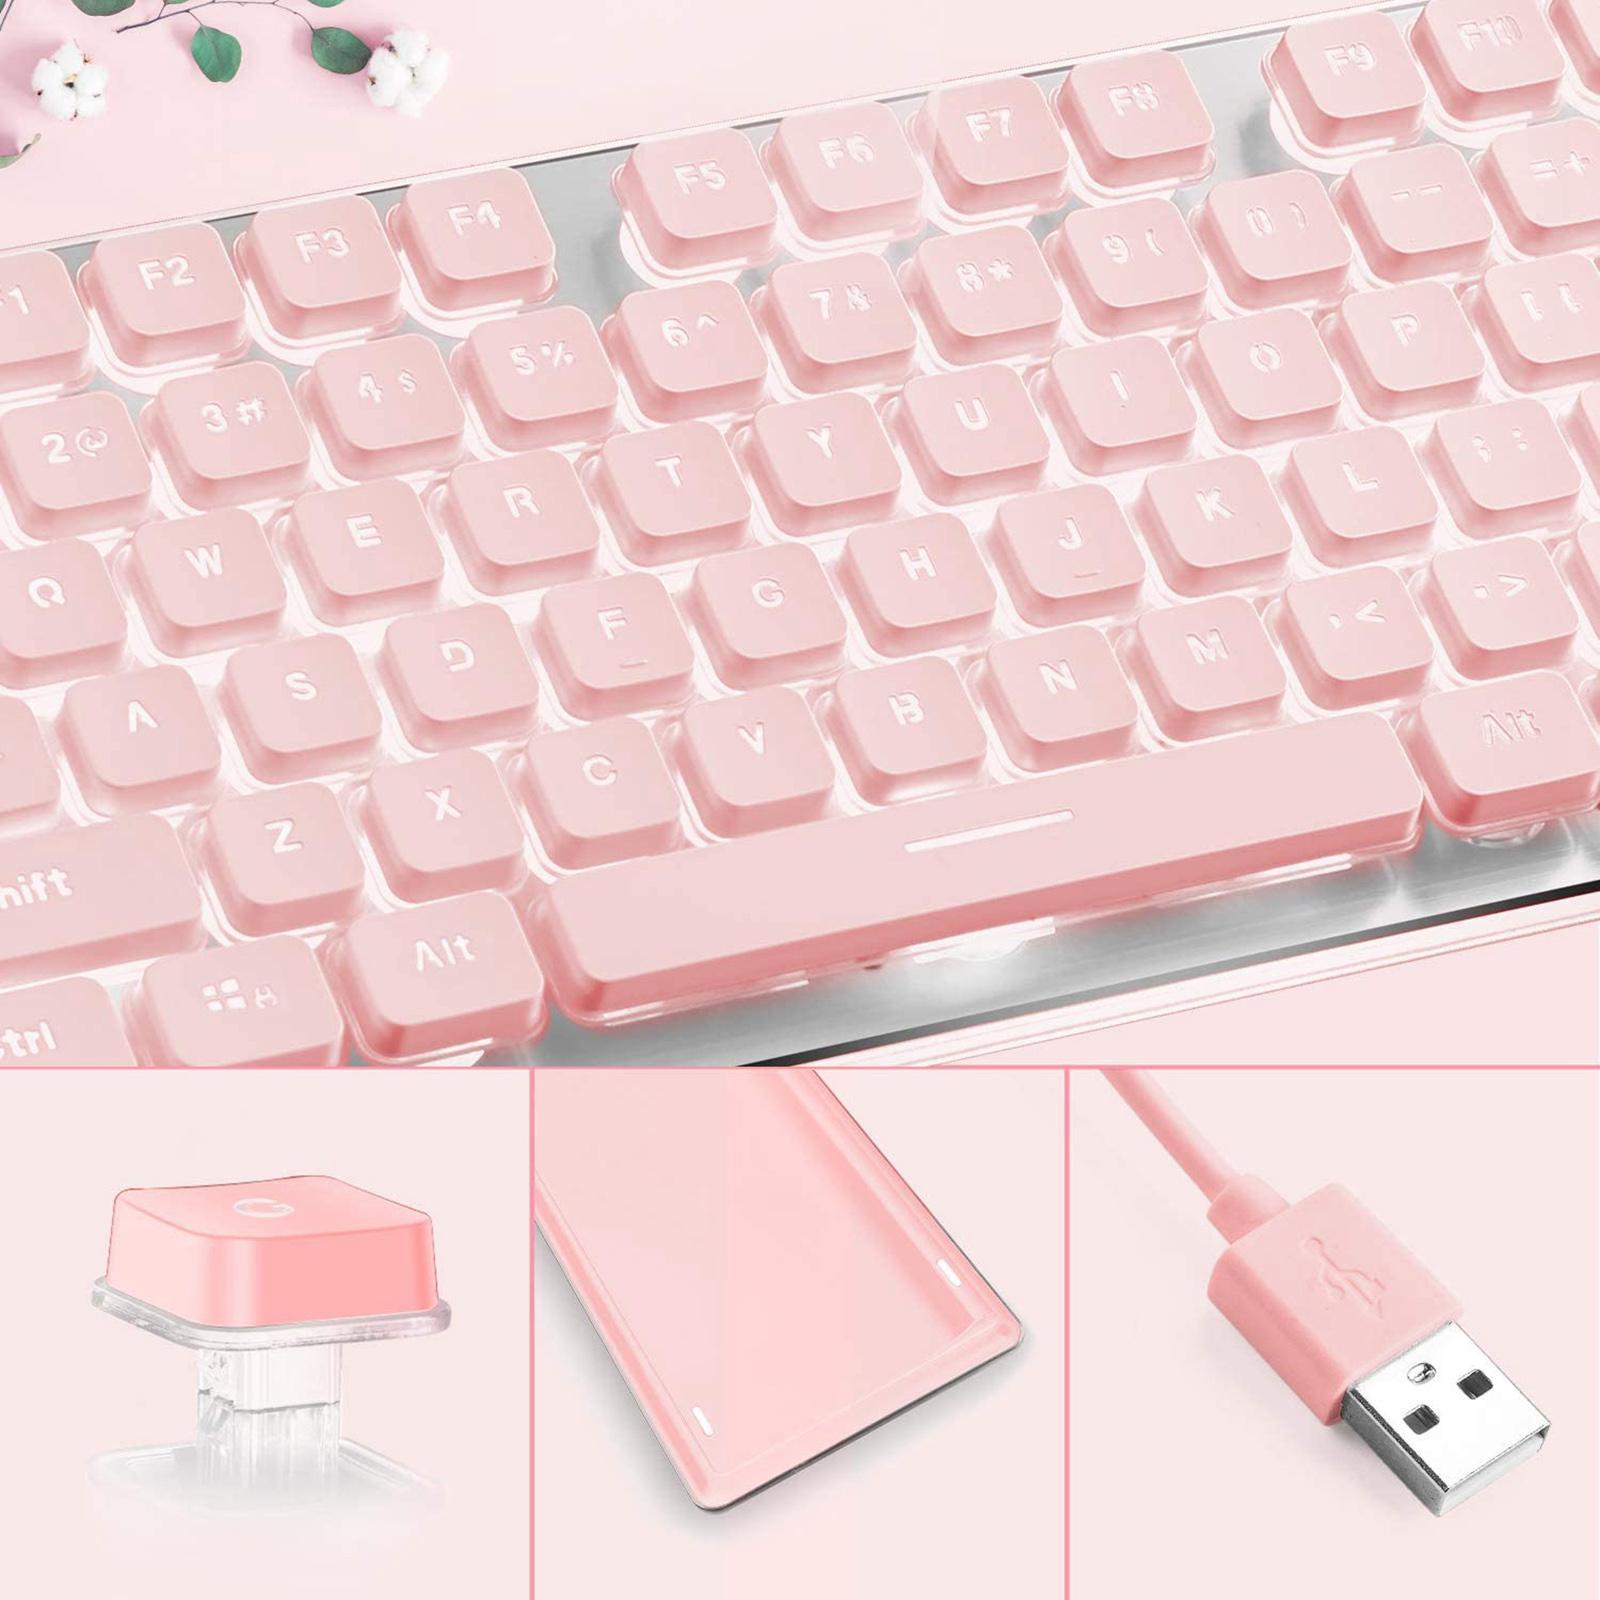 Membrane Gaming Keyboard  Panel Keyboard  Pink white light